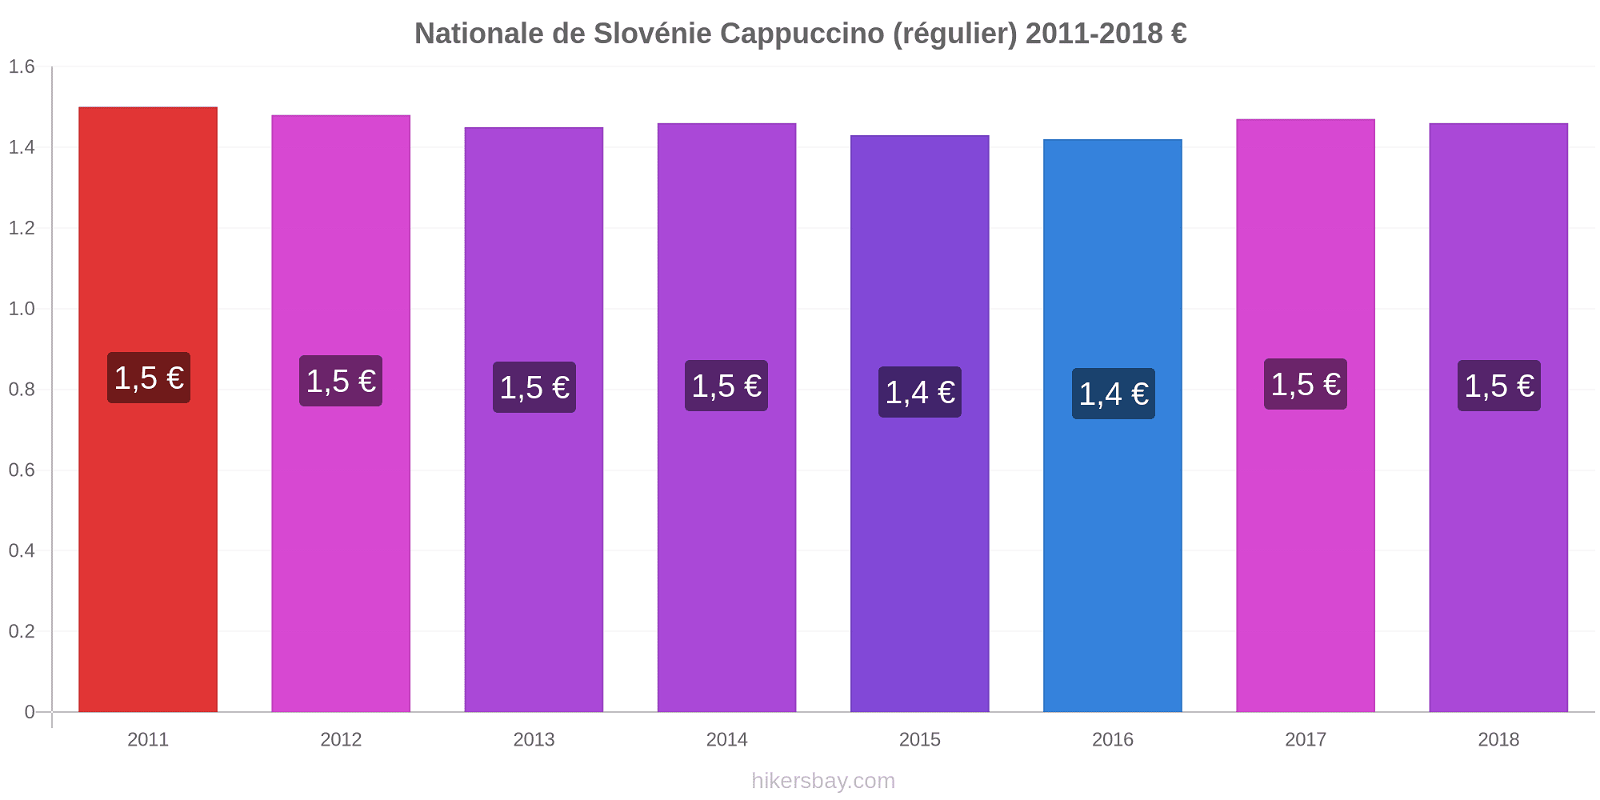 Nationale de Slovénie changements de prix Cappuccino (régulier) hikersbay.com